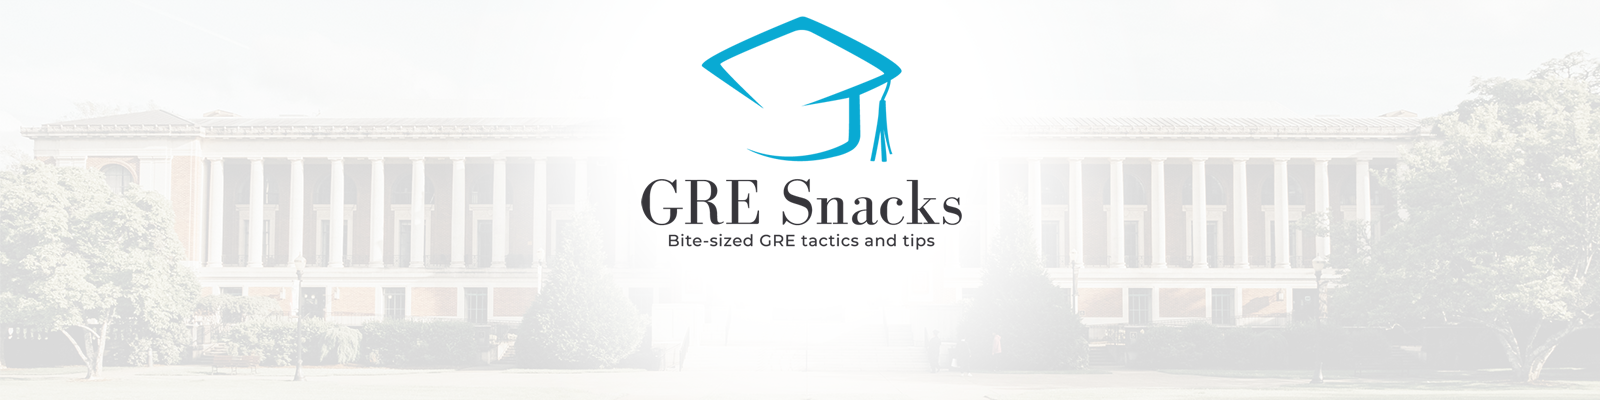 GRE Snacks